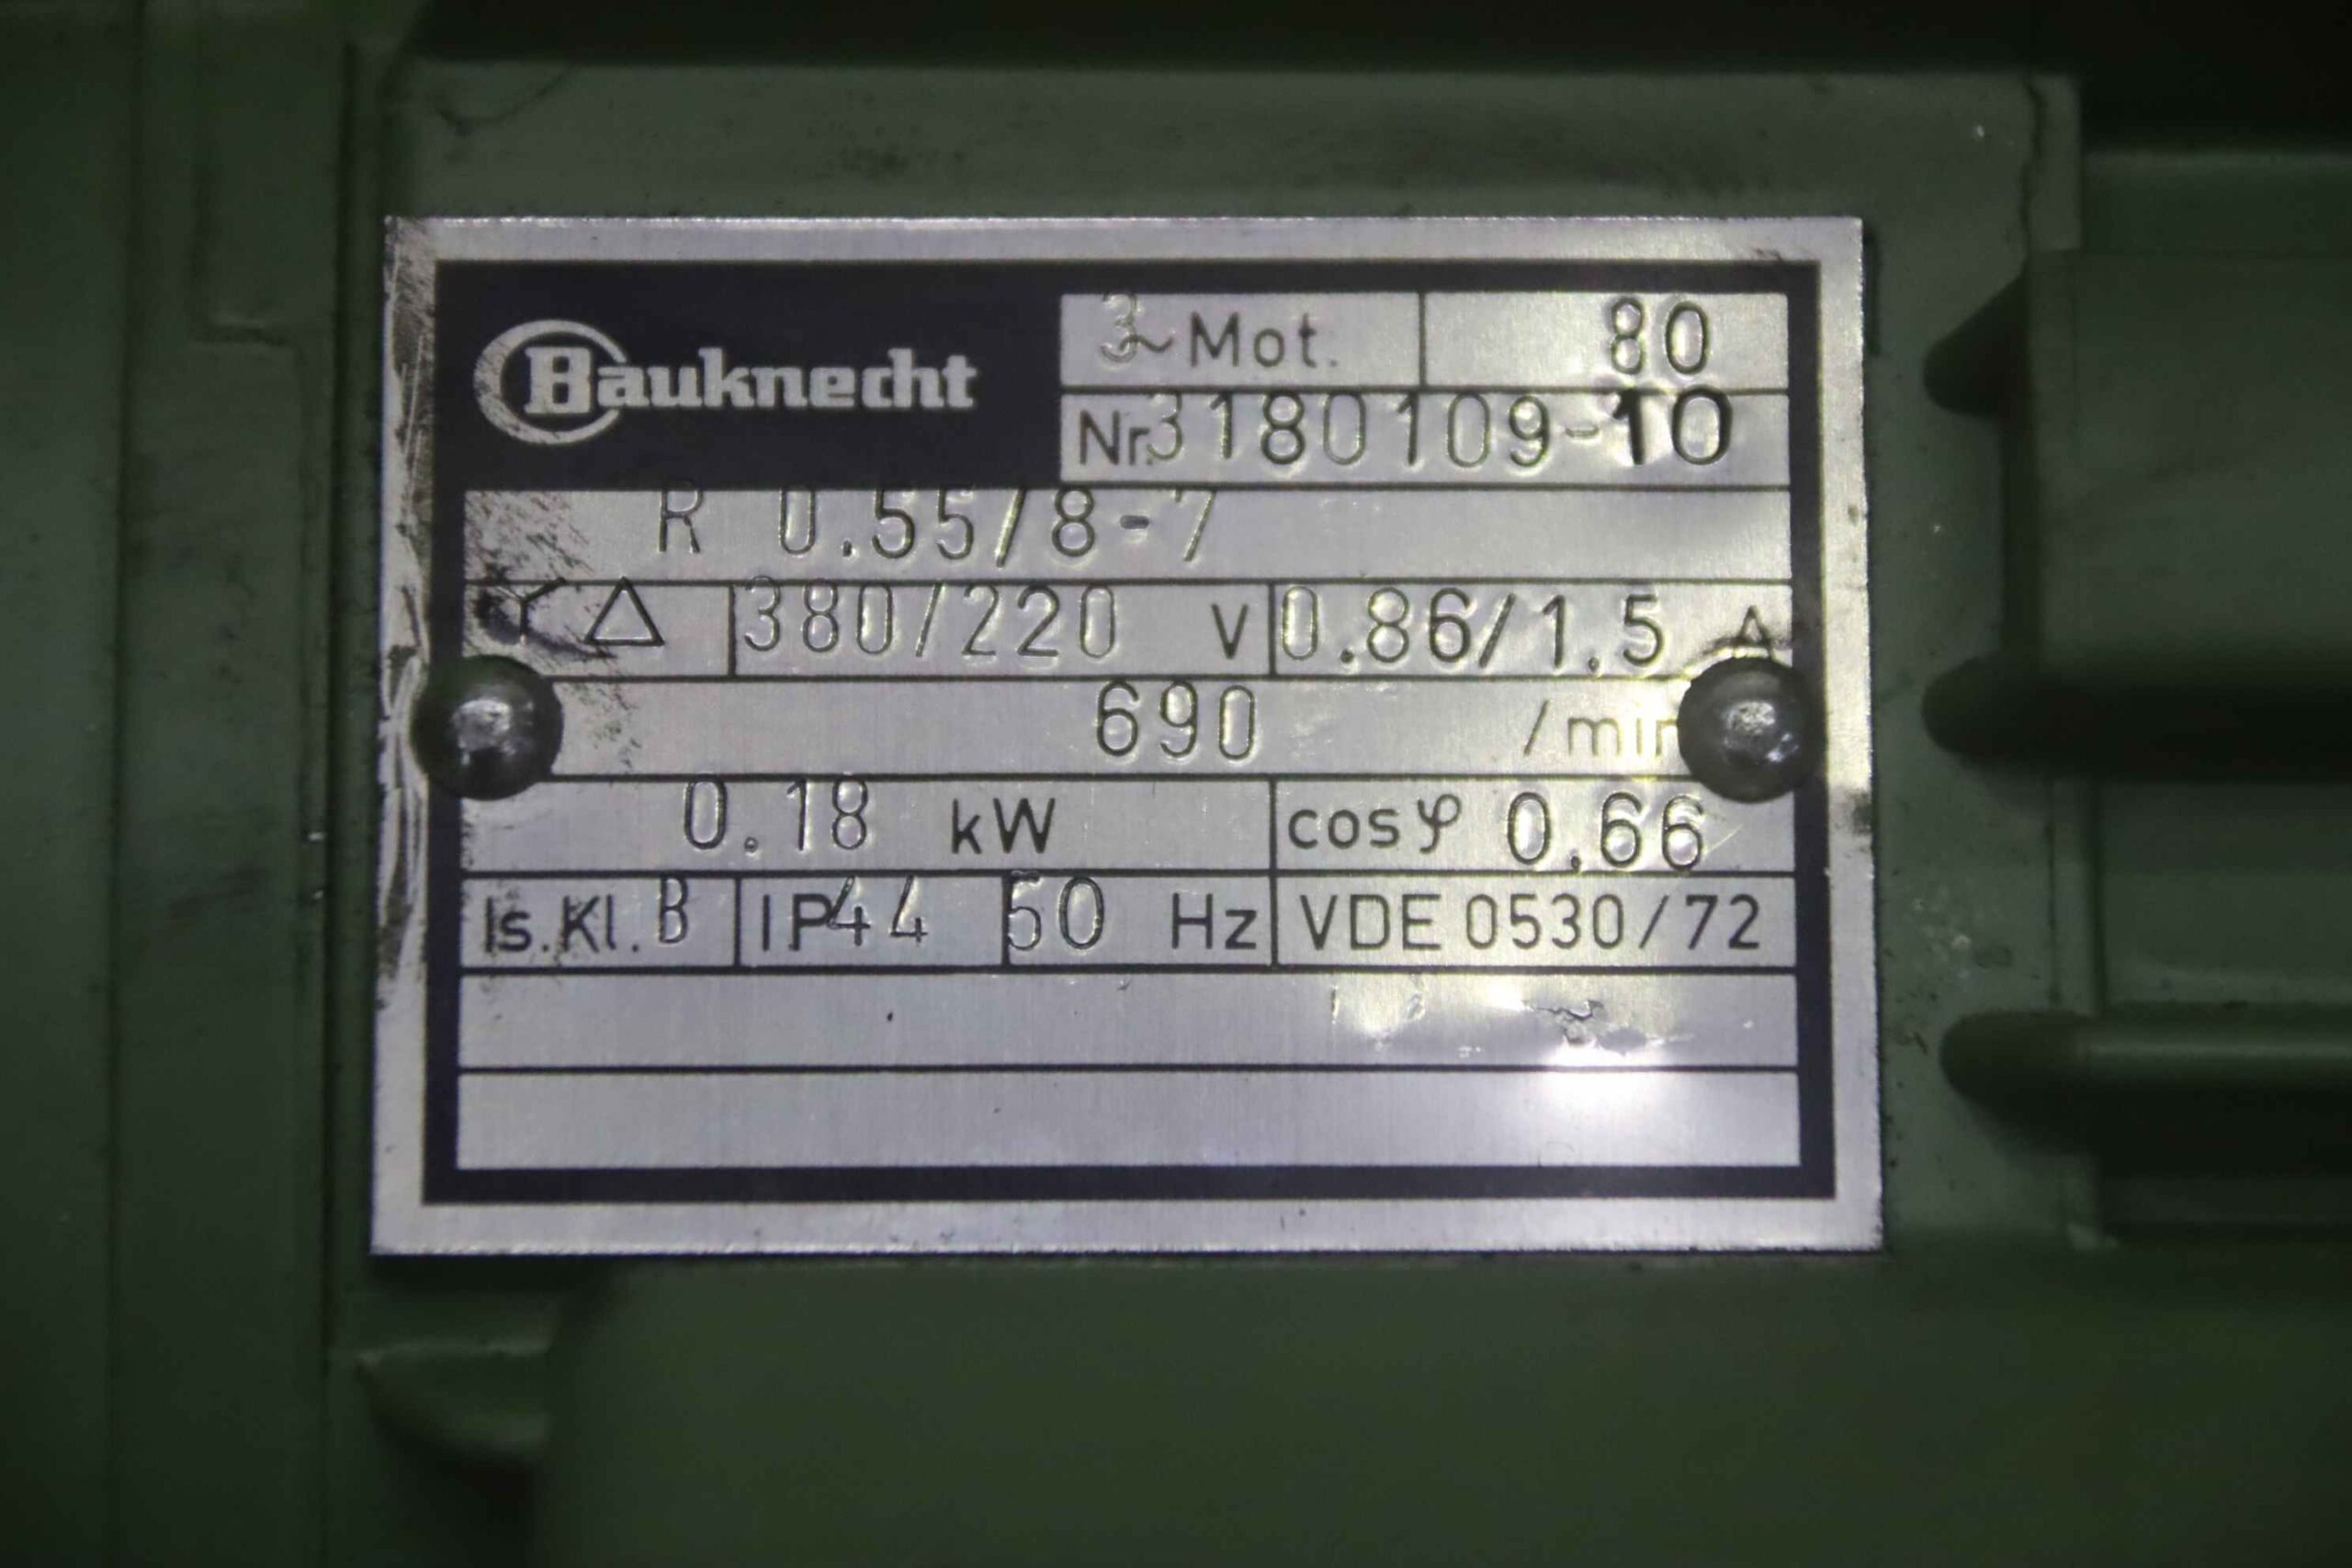 ▷ Elektromotor 0,18 kW 690 U/min Bauknecht R 0.55/8-7 gebraucht kaufen 